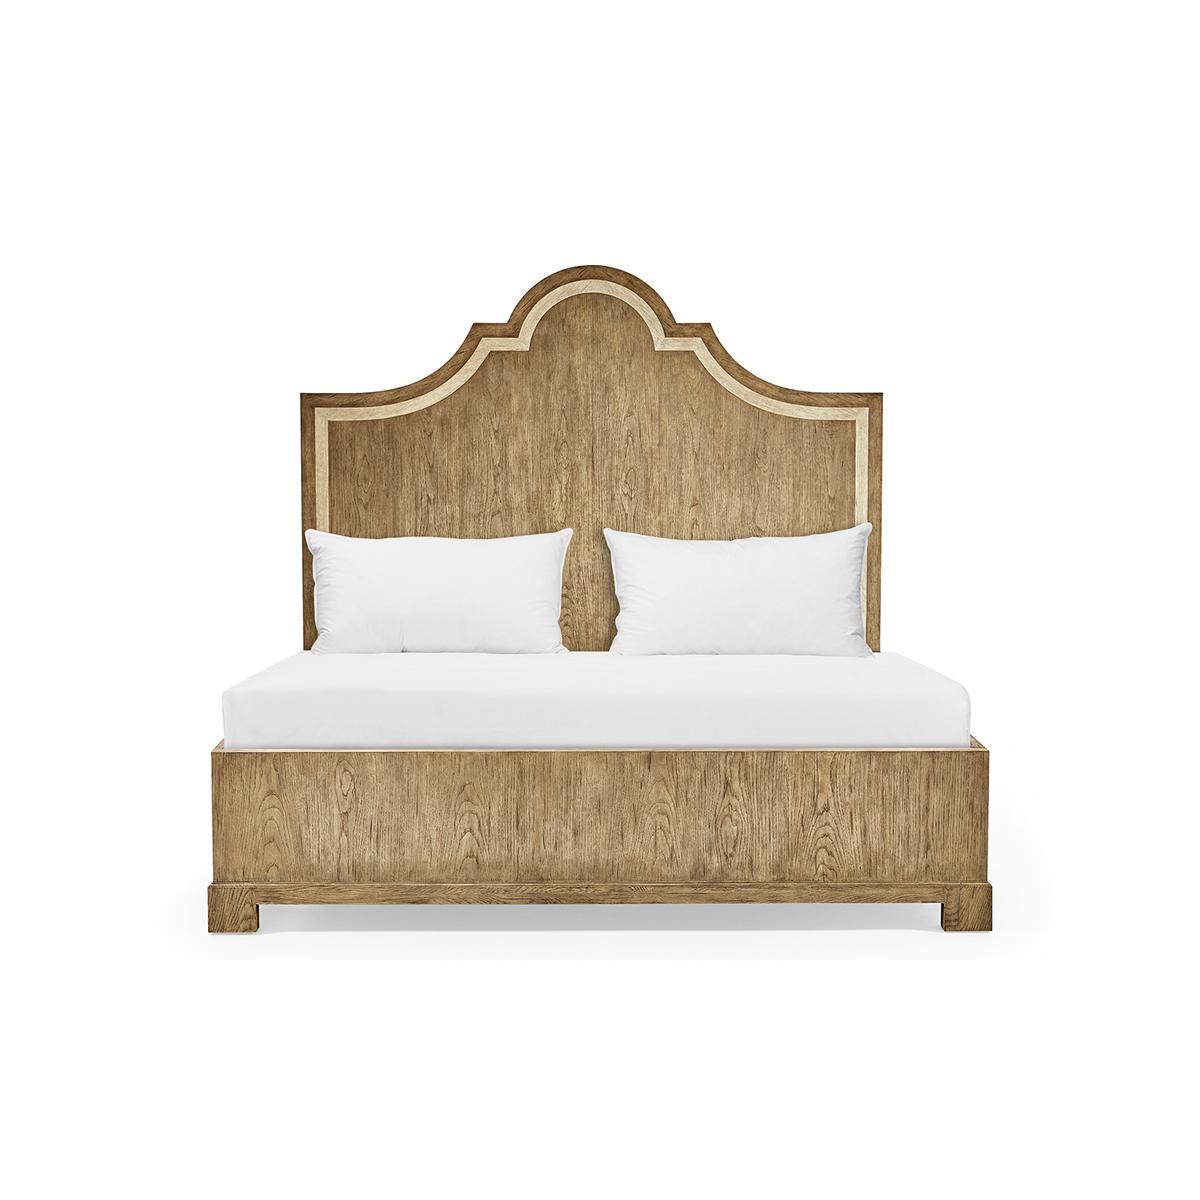 Wir stellen Ihnen das Modern Eiche Kingsize-Panelbett vor, die perfekte Ergänzung für Ihr Schlafzimmer, die Ihnen ein unvergleichliches Schlaferlebnis verspricht. Das elegante und auffällige Design mit seinen sanften, aber ausdrucksstarken Linien